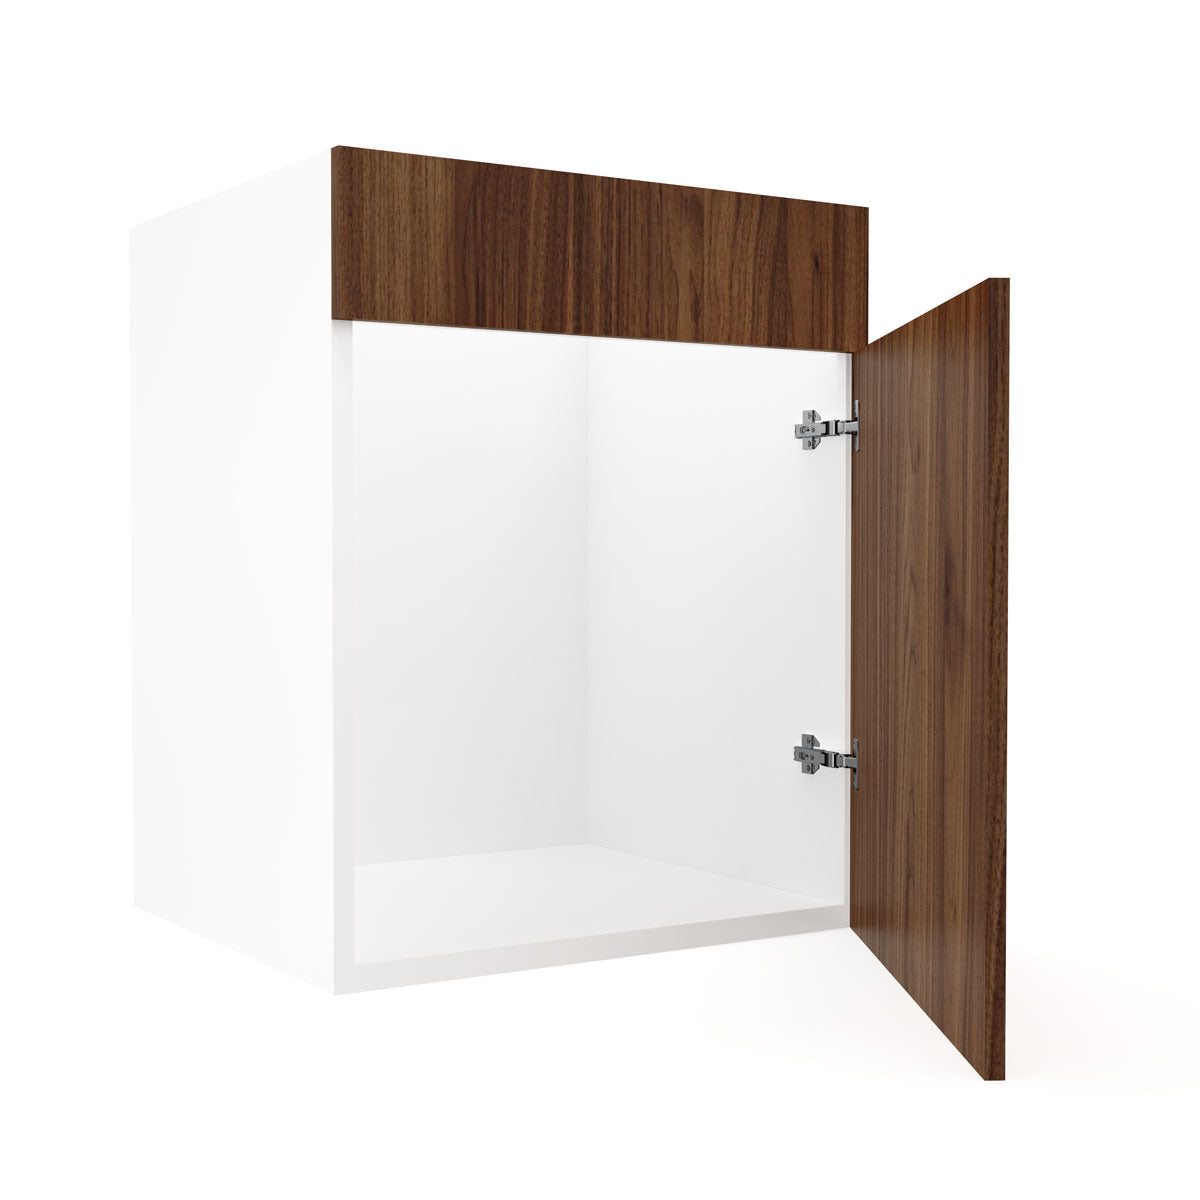 RTA - Walnut - Sink Vanity Cabinets | 24"W x 34.5"H x 21"D